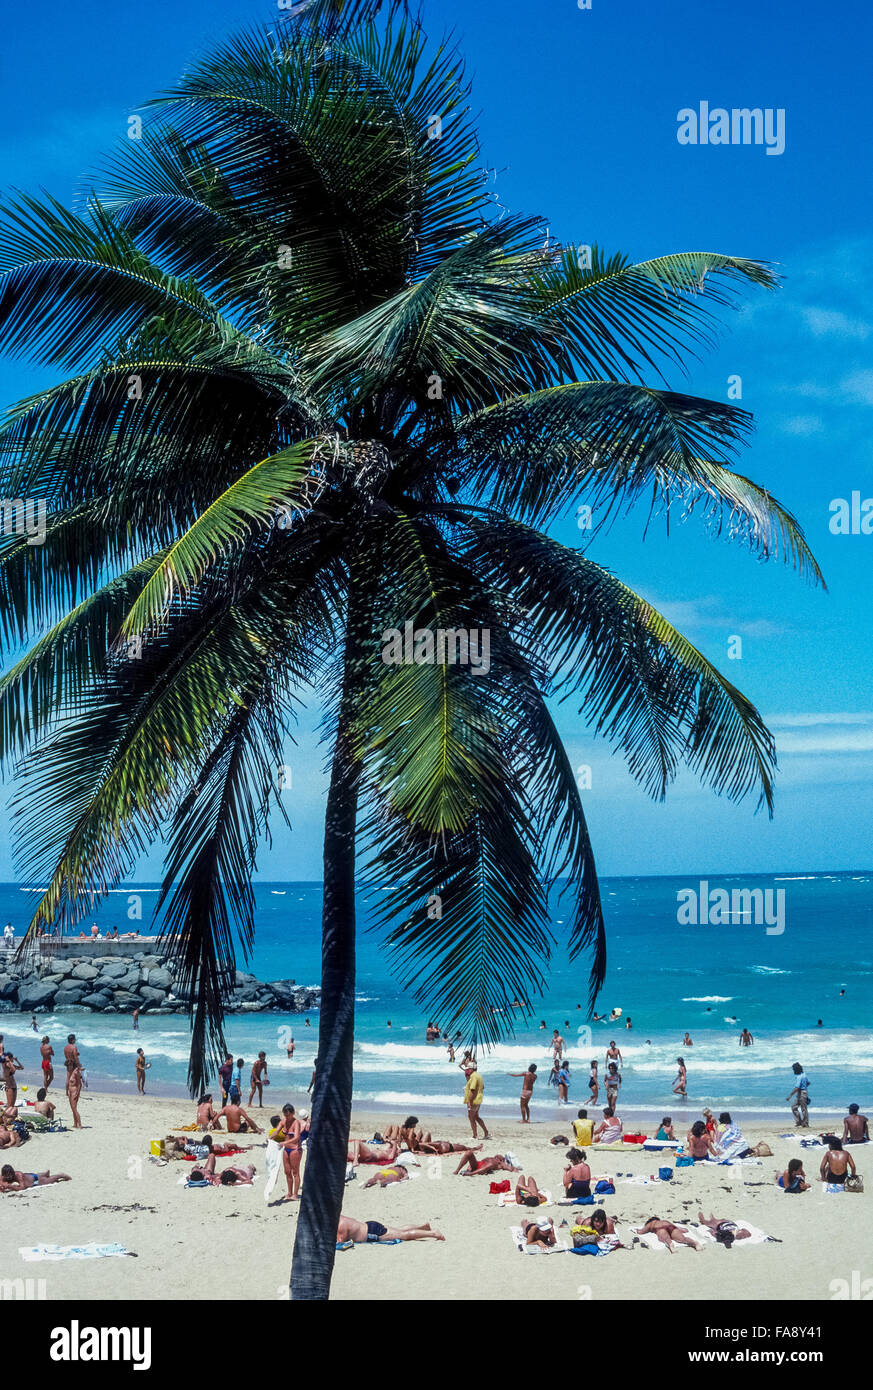 Palmen gesäumte Condado Beach liegt direkt östlich der Hauptstadt von San Juan und eine Lieblings langen weißen Strand zum Sonnenbaden Bewohner sowie Besucher nach Puerto Rico, ein Territorium der Vereinigten Staaten in der Karibik. In der Nähe des Strandes sind viele High-Rise Hotels der Stadt, die bei Touristen sehr beliebt sind. Stockfoto